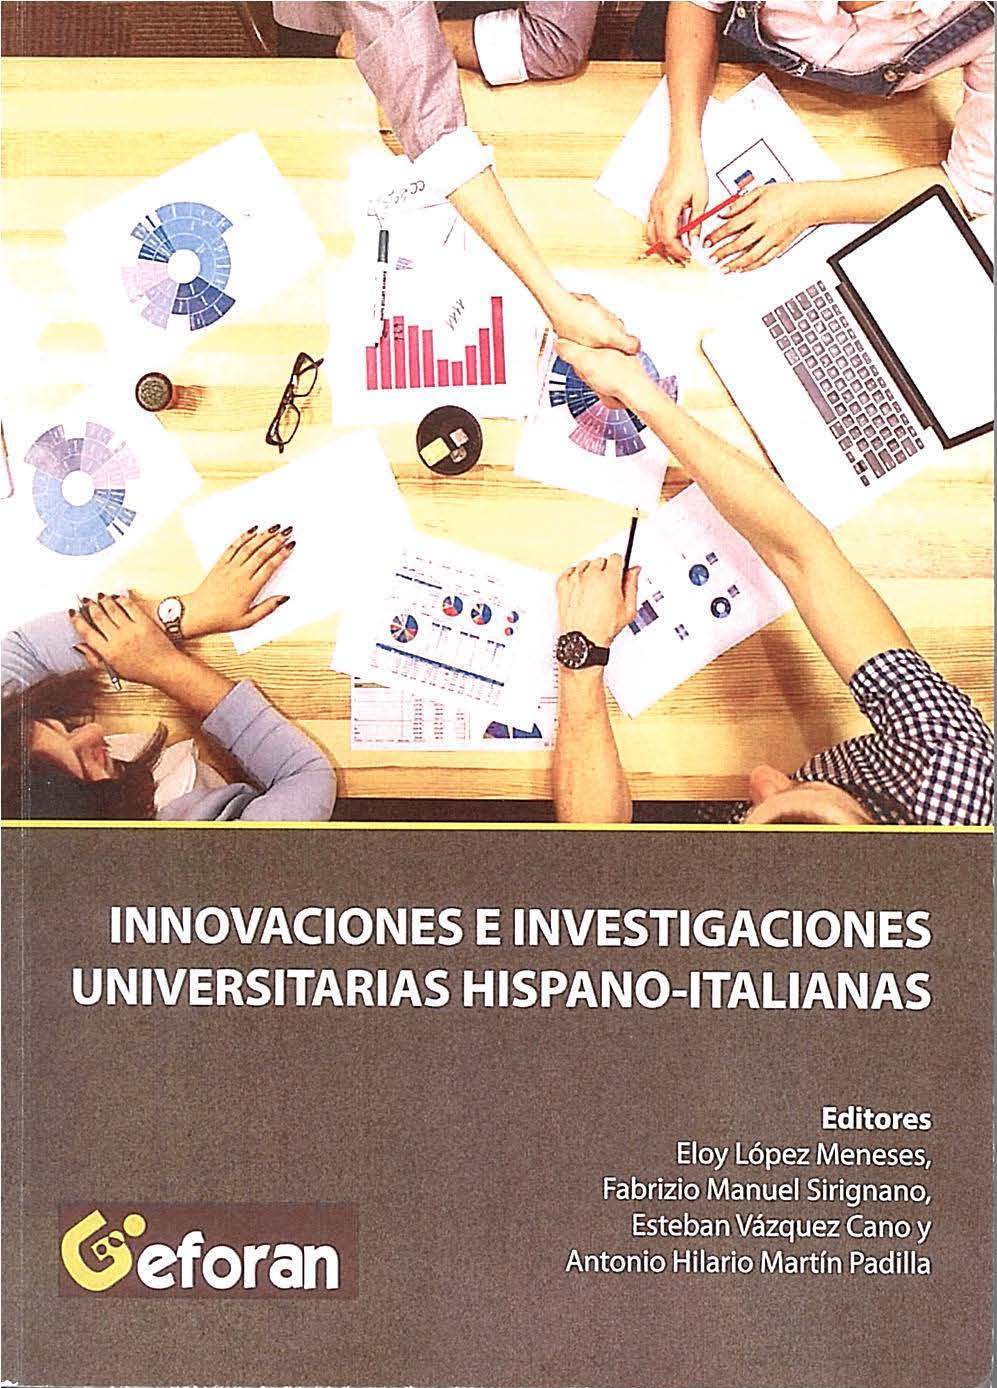 Imagen de portada del libro Innovaciones e investigaciones universitarias hispano-italianas